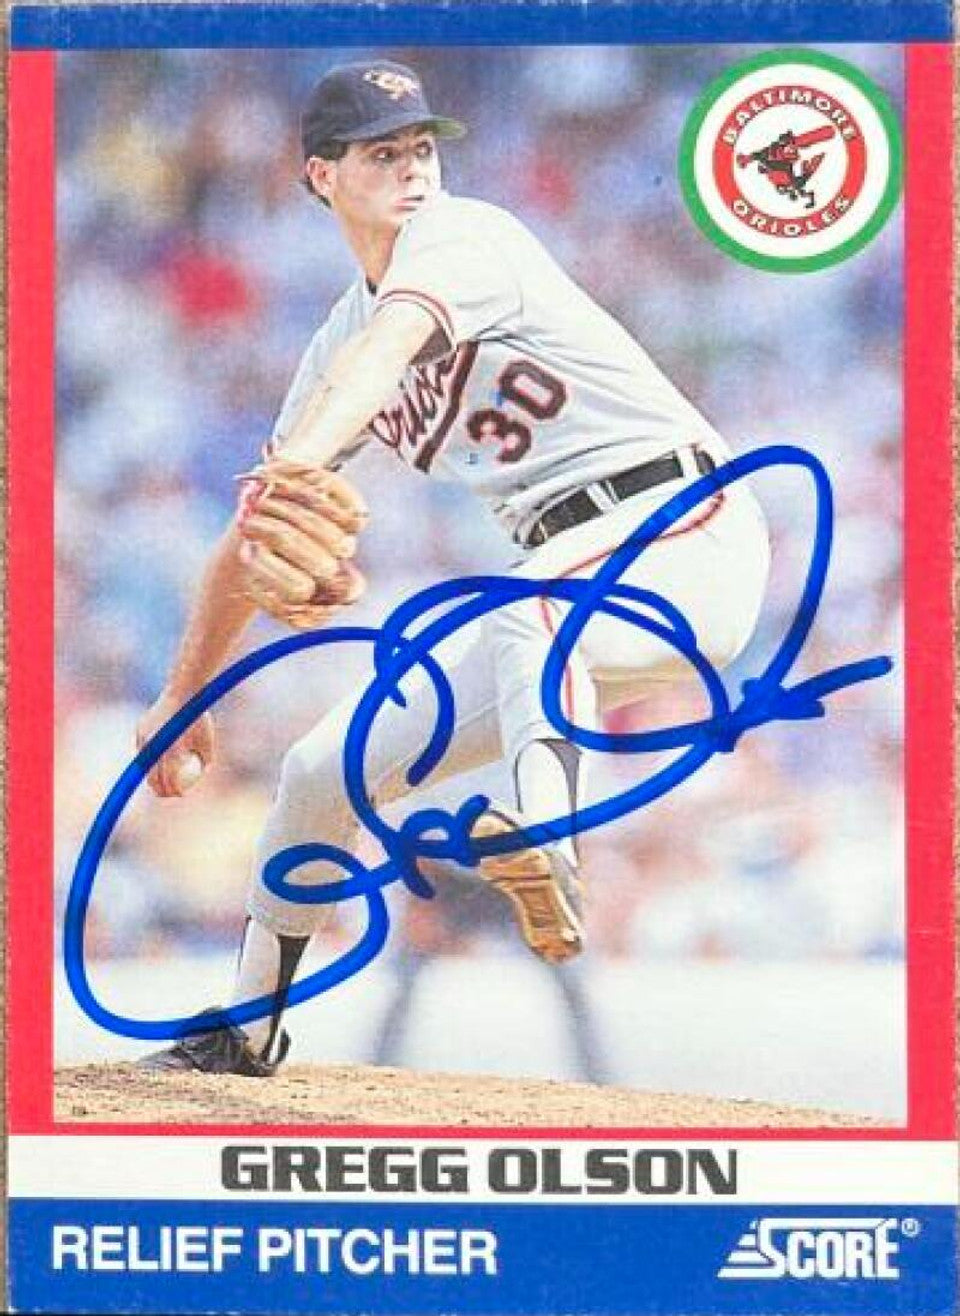 Gregg Olson Signed 1991 Score 100 Superstars Baseball Card - Baltimore Orioles